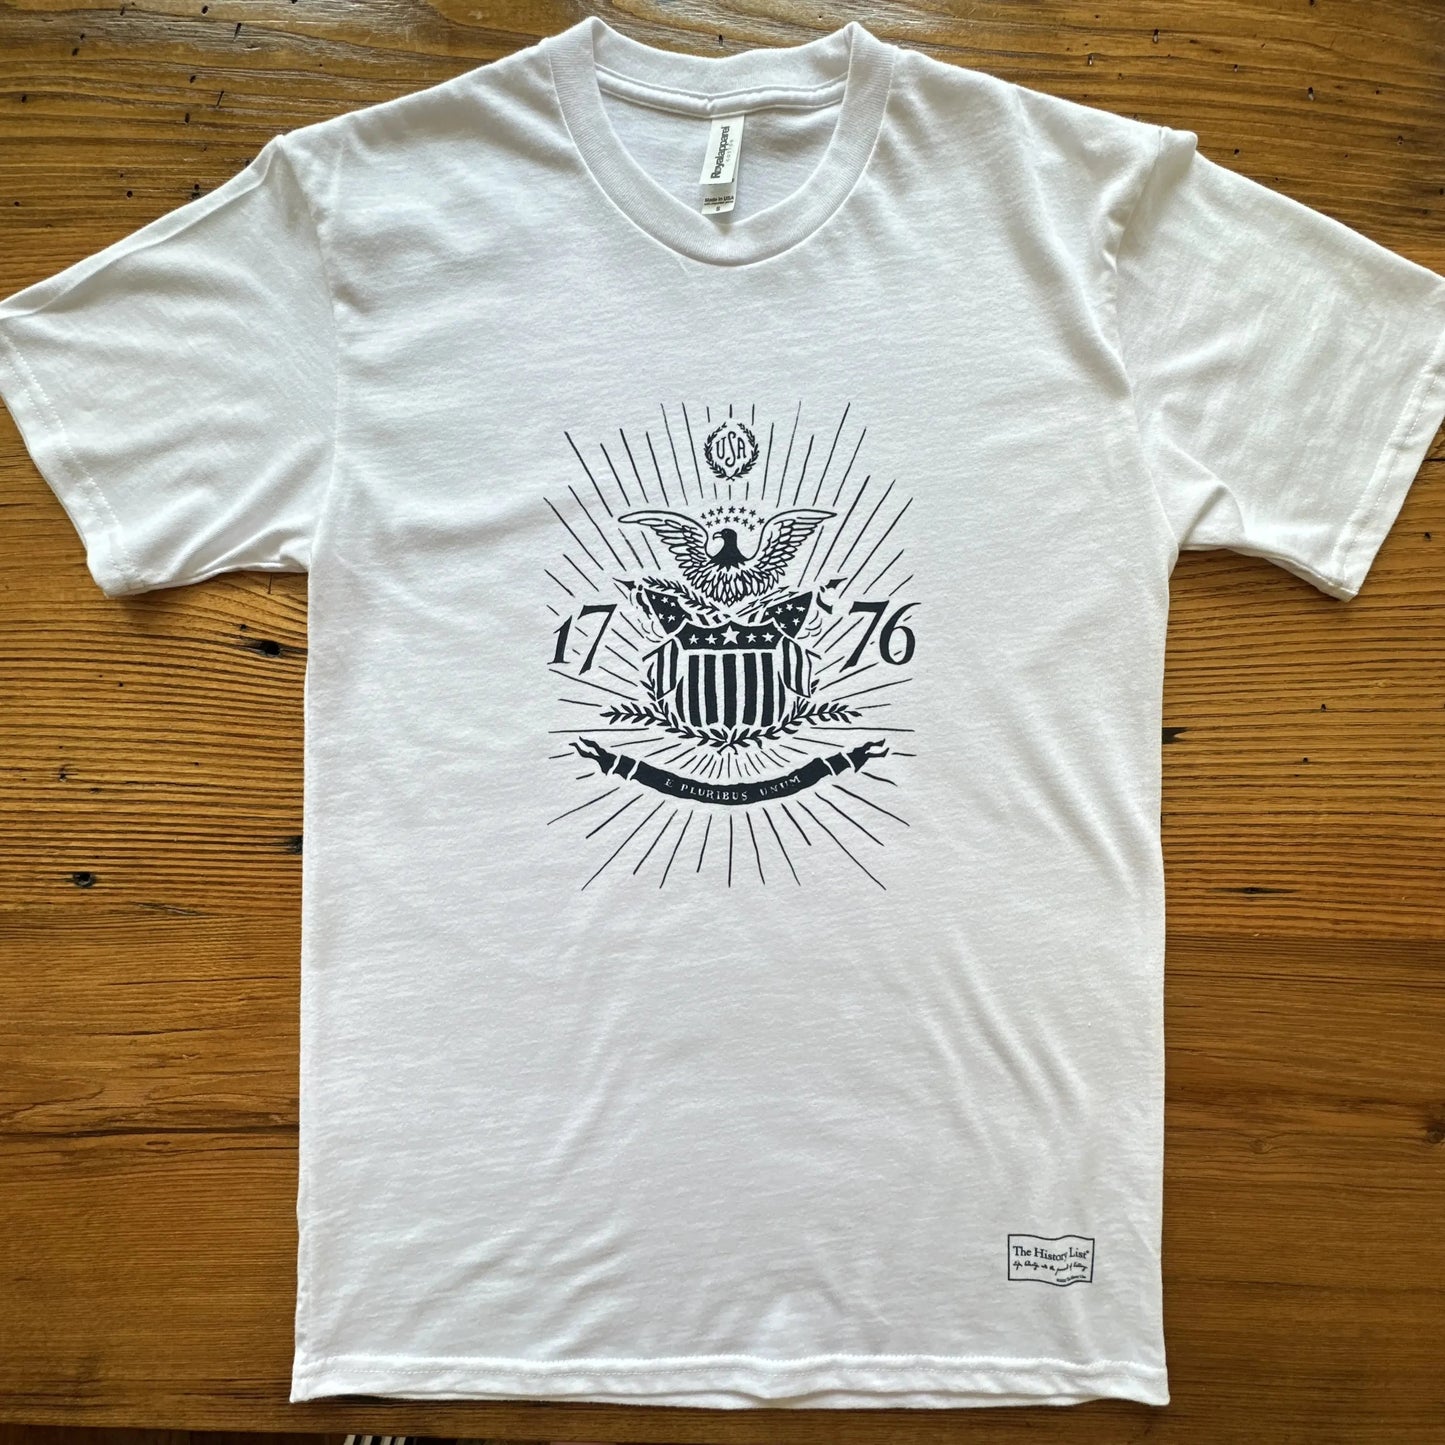 1776 "E Pluribus Unum" Made in America shirt